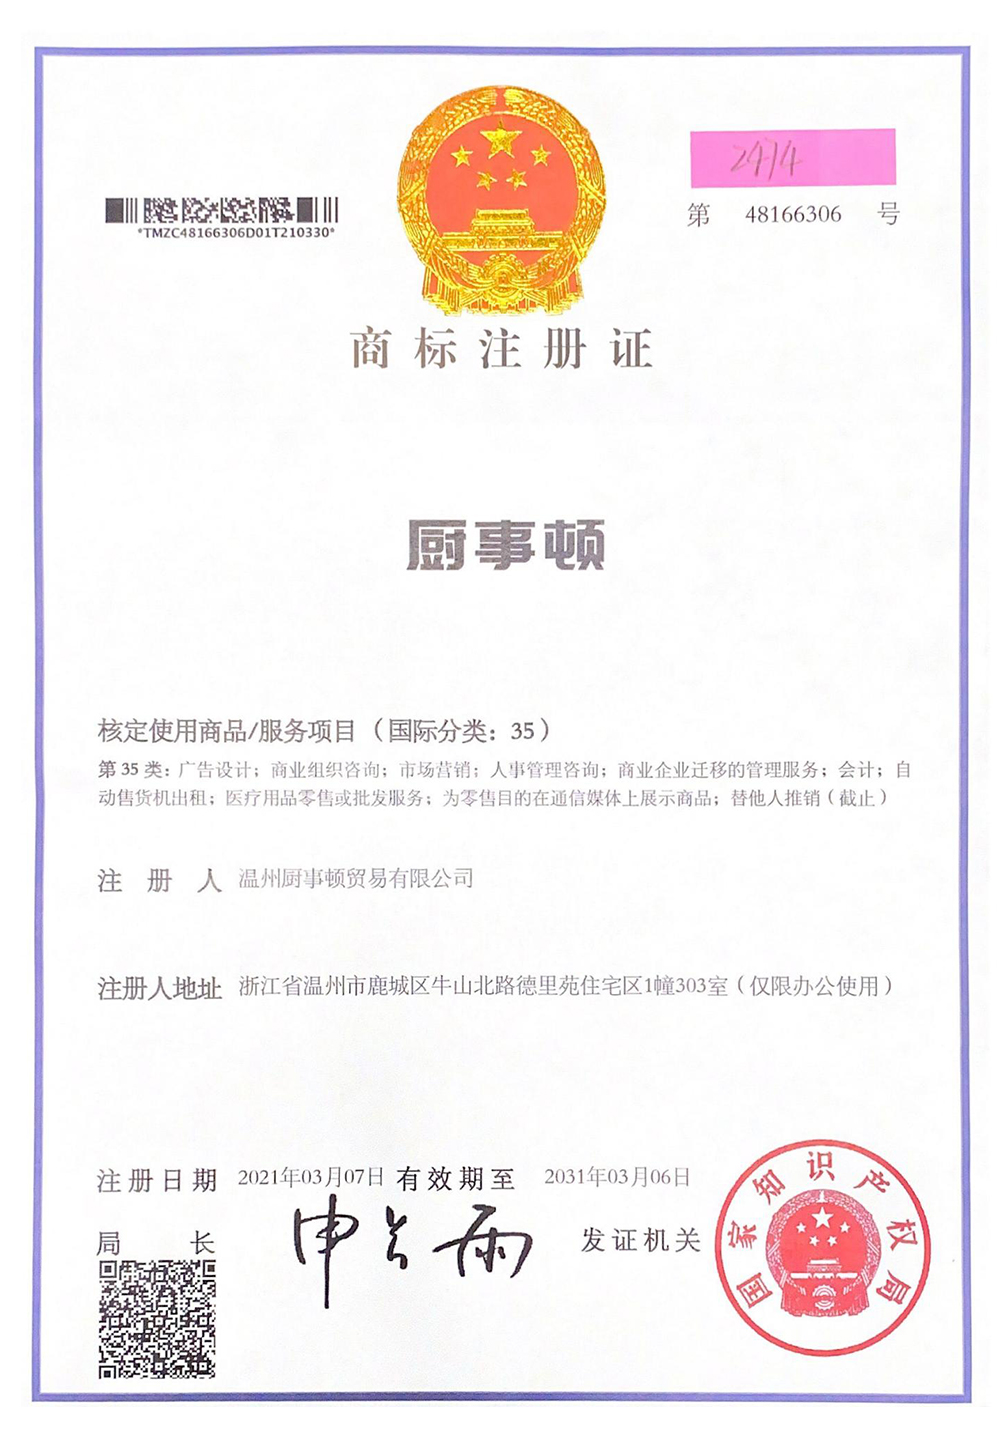 Certifikata e regjistrimit të markës tregtare të enëve të kuzhinës_00